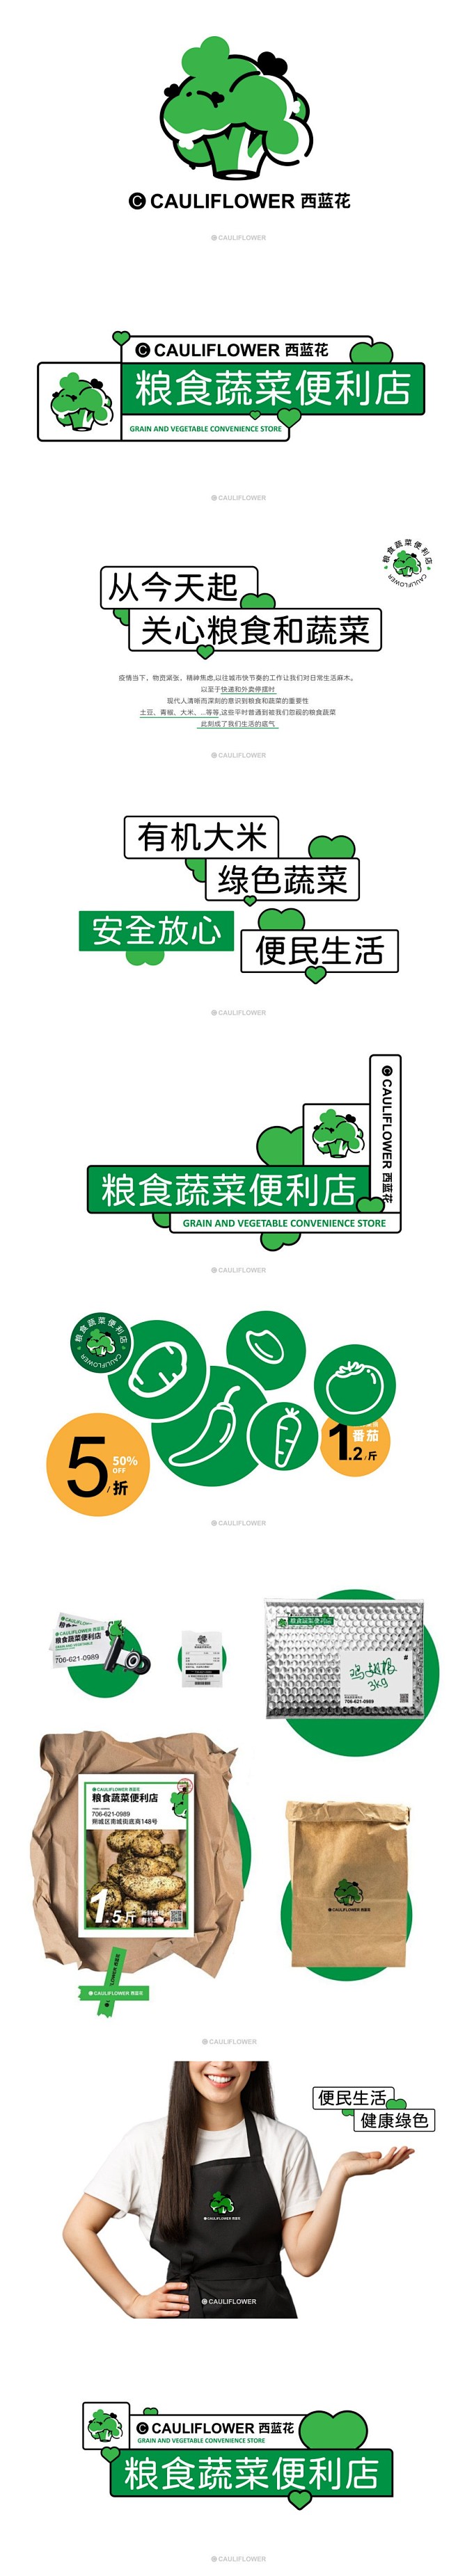 西蓝花粮食蔬菜便利店品牌logo设计和V...